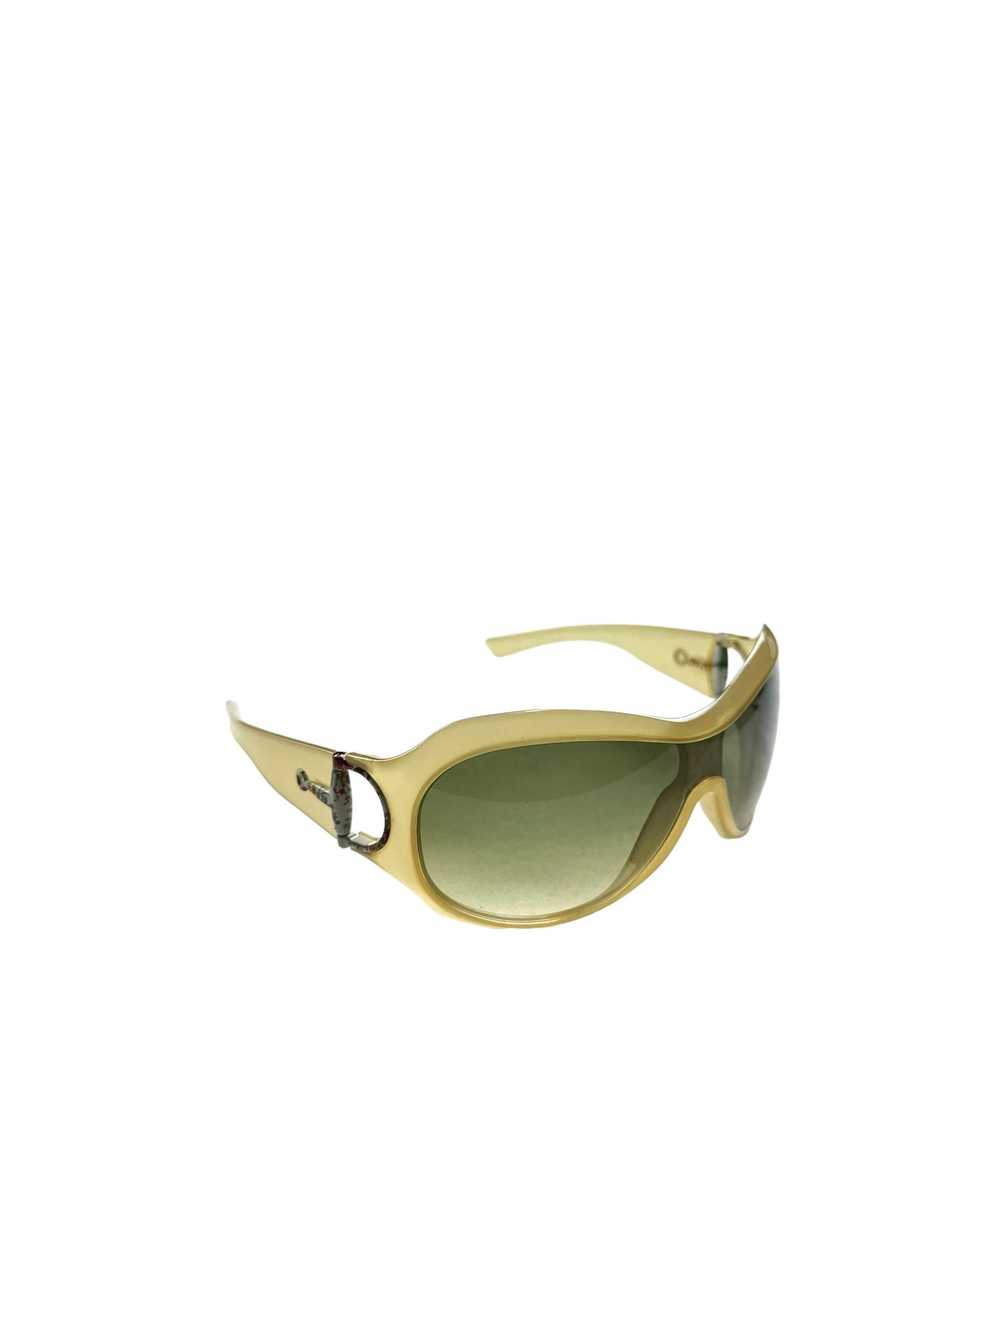 Gucci Gucci mask sunglasses - image 2